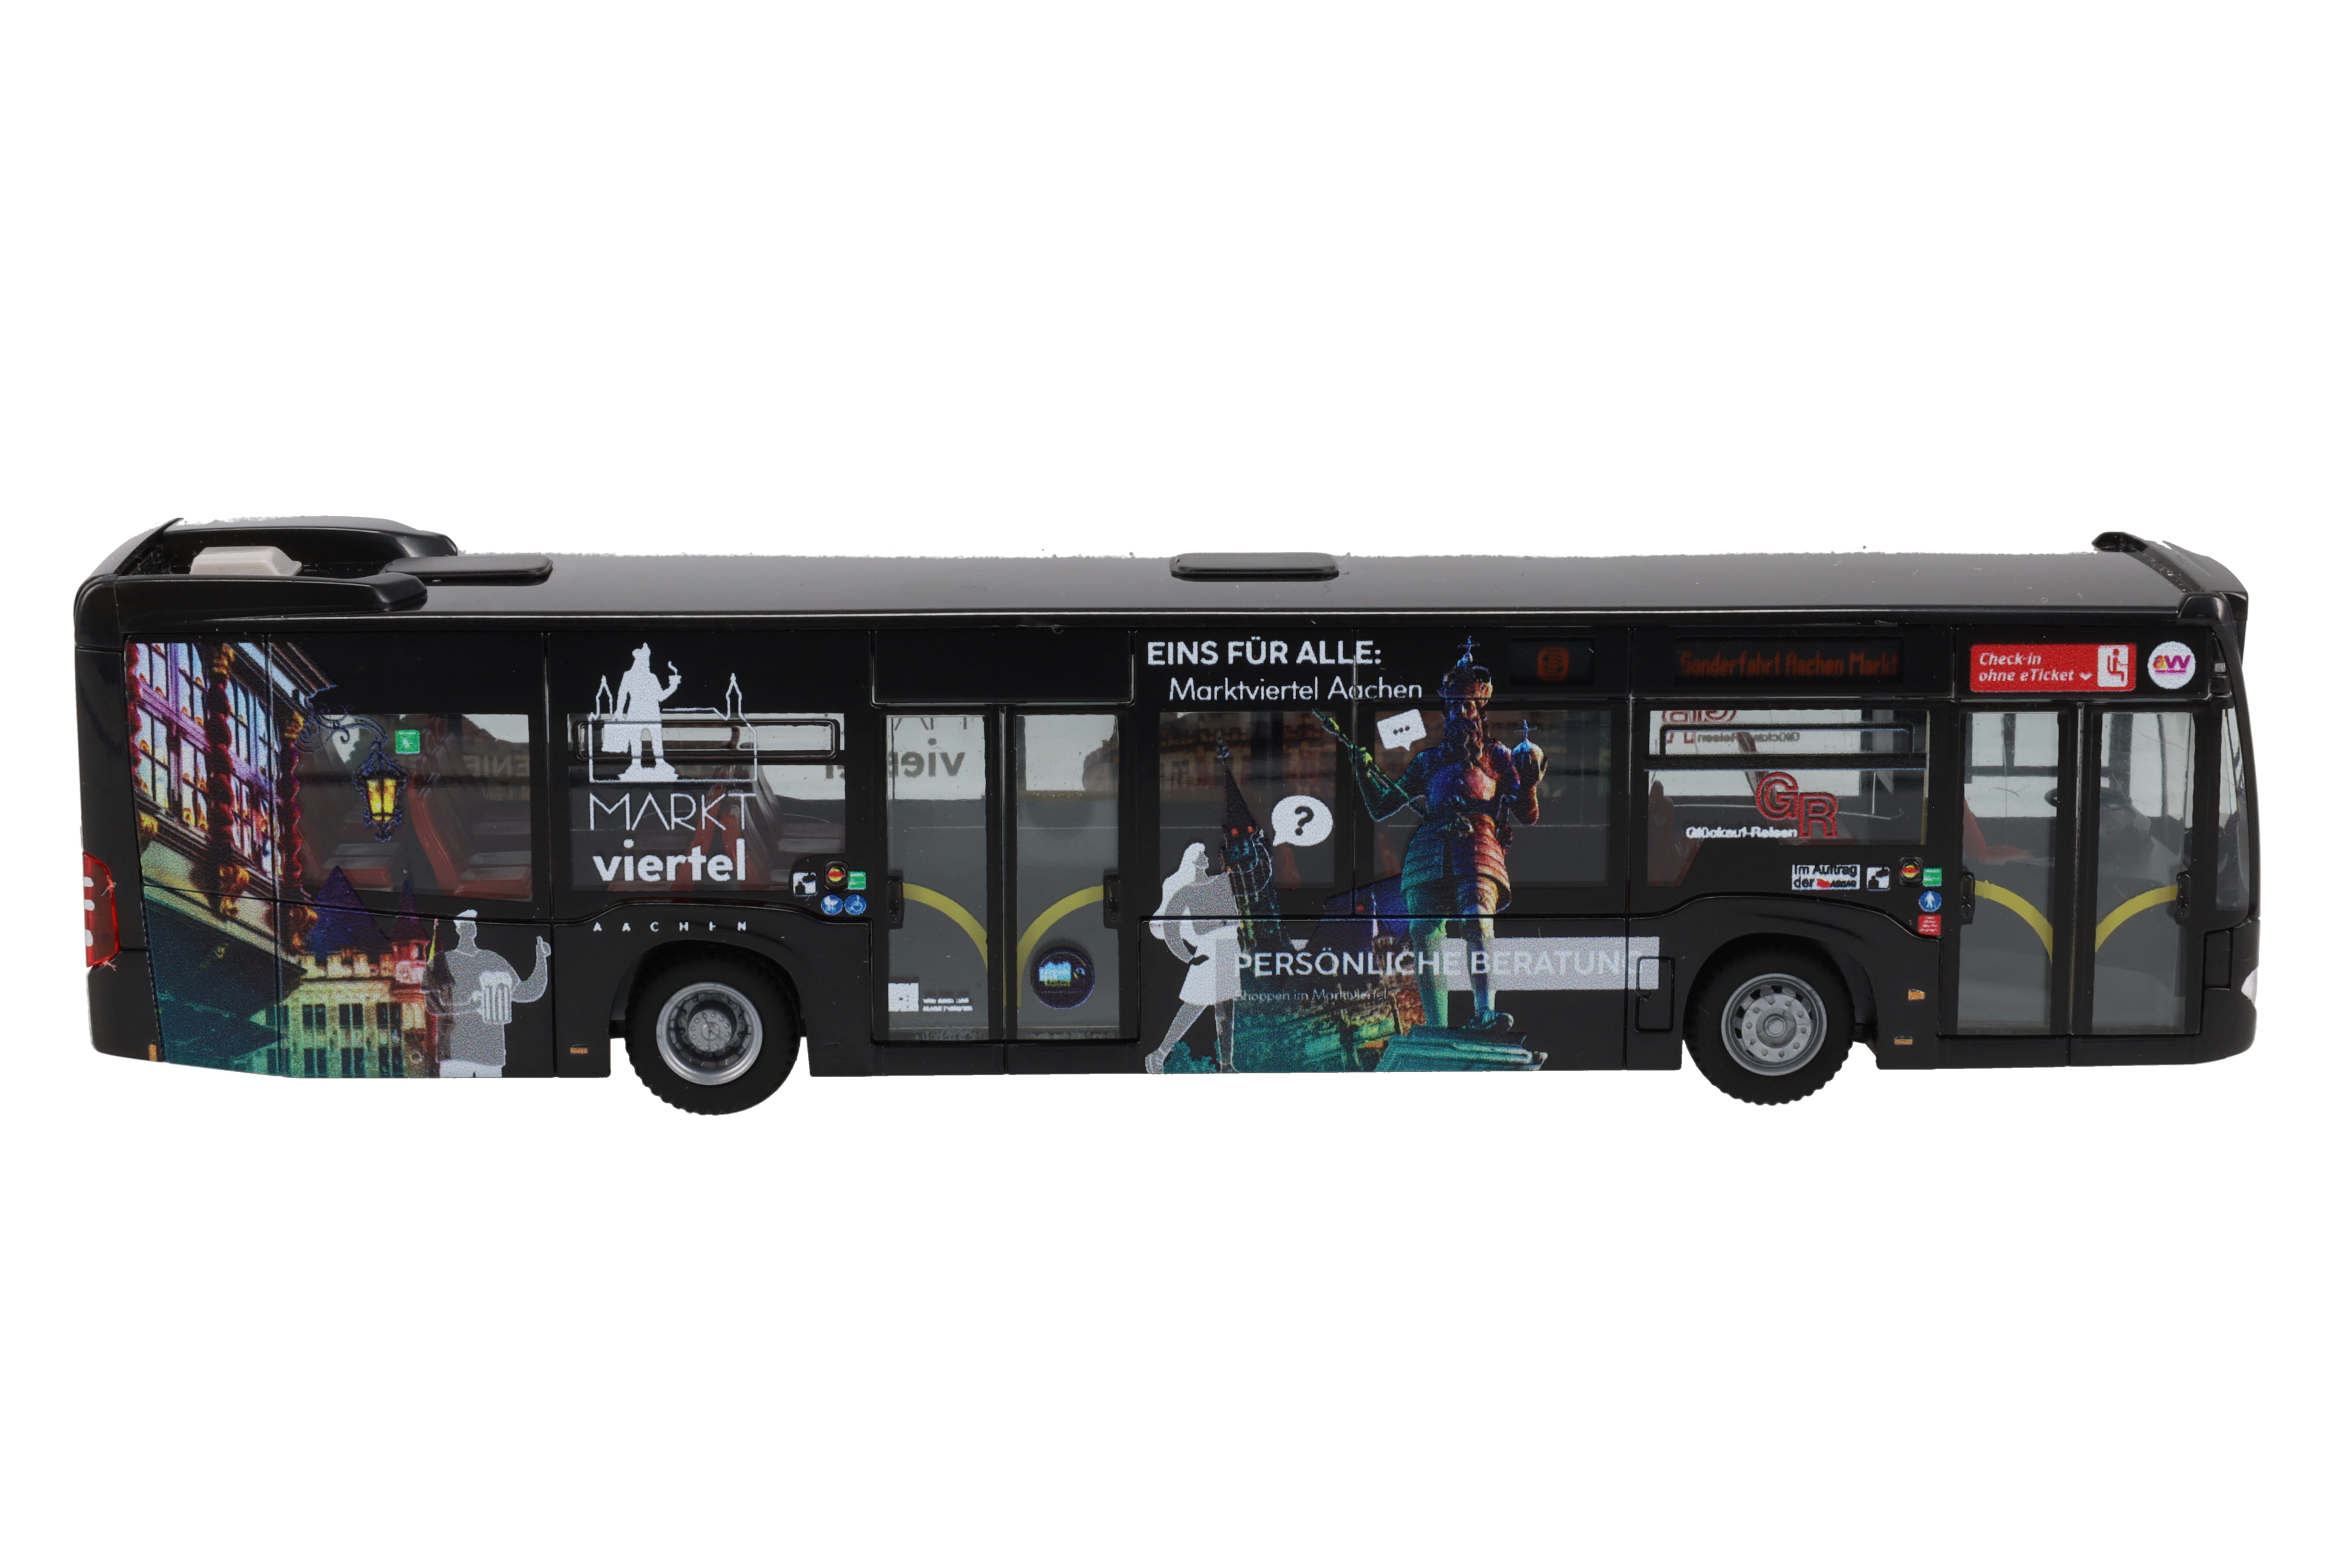 Modélisme HO : Bus de ligne Mercedes Citaro (RIETZE) - Jeux et